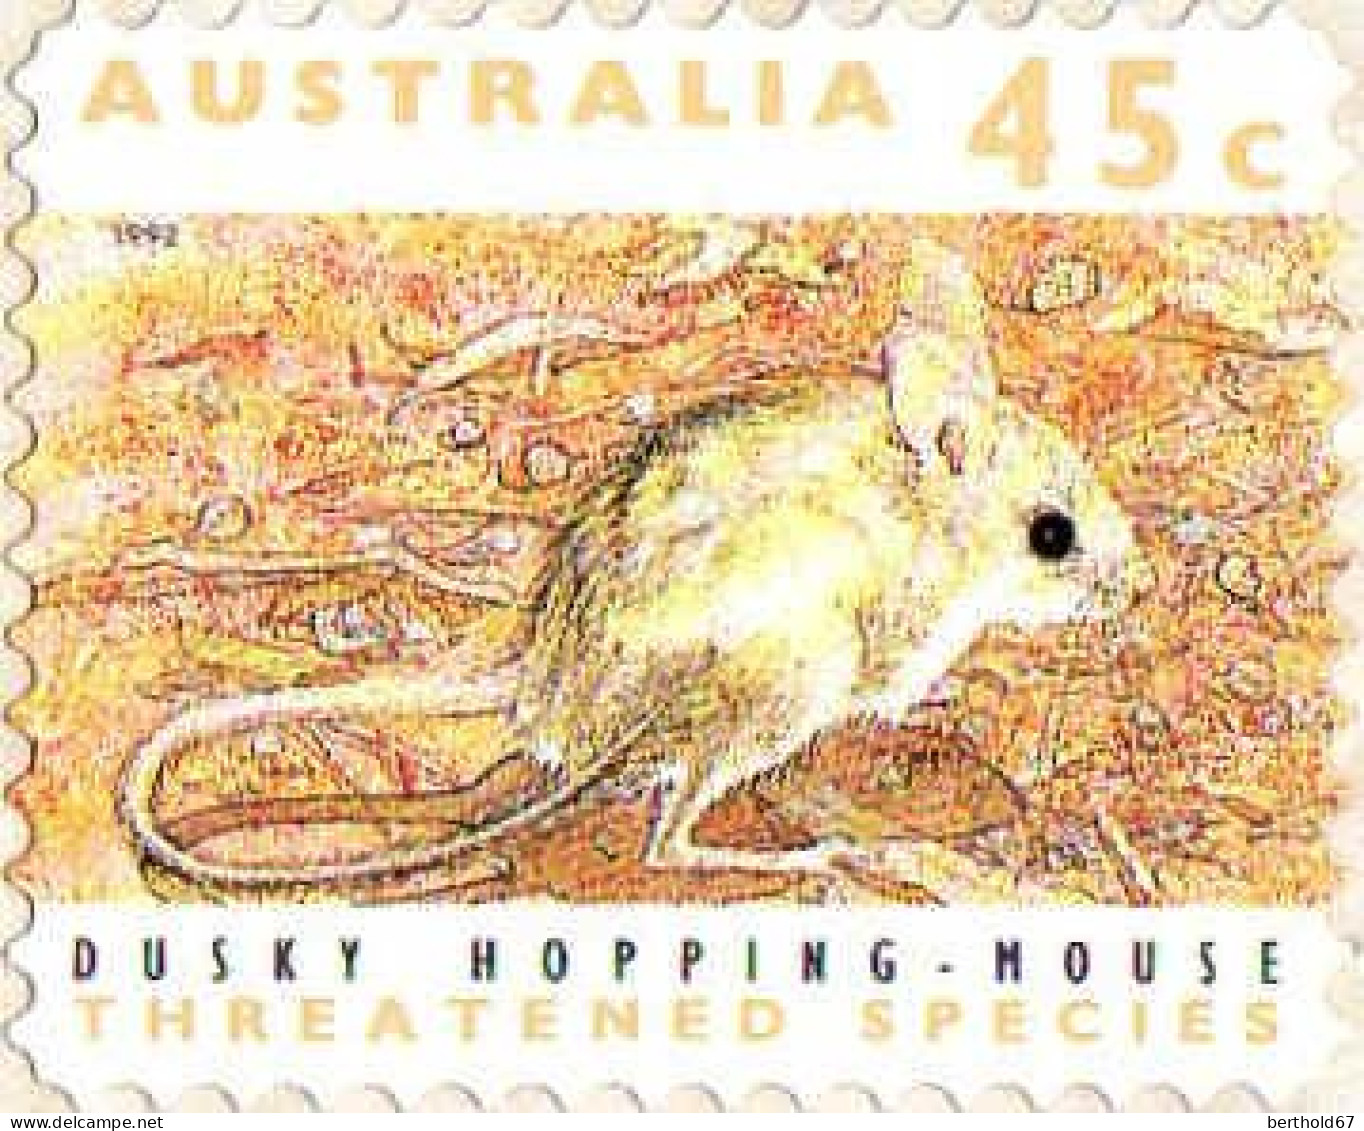 Australie Poste N** Yv:1249b/1254b Espèces Menacées D'extinction Autoadhésifs (Thème) - Mint Stamps